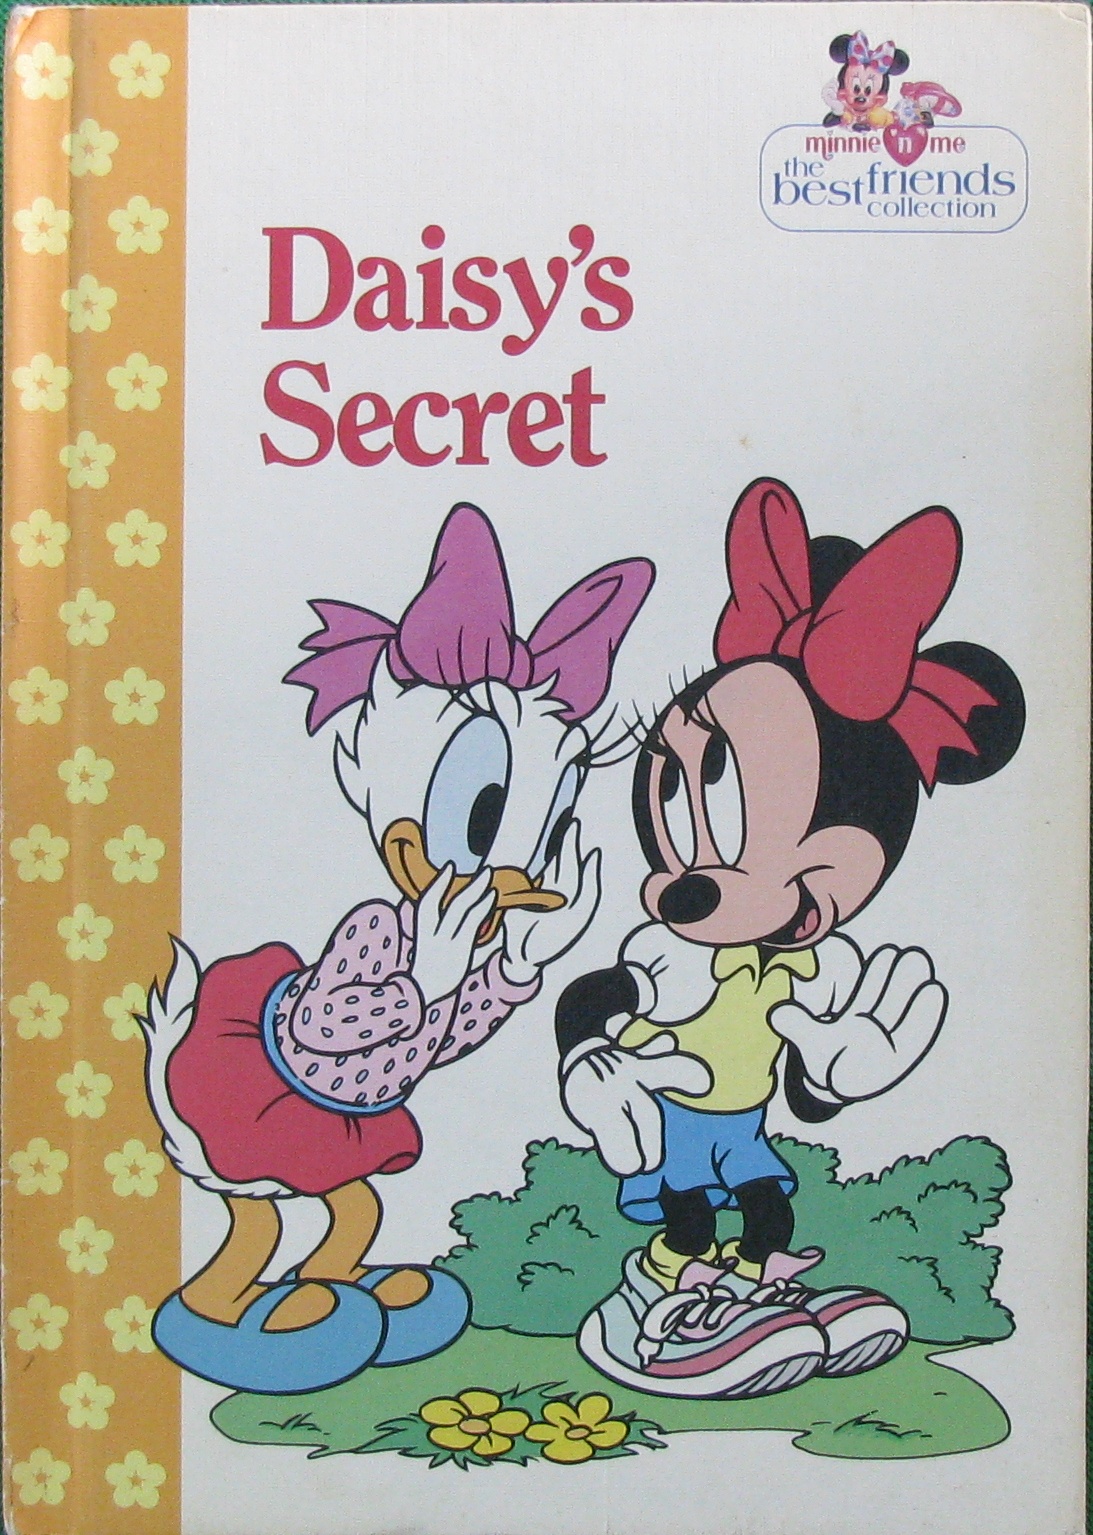 daisy"s secret